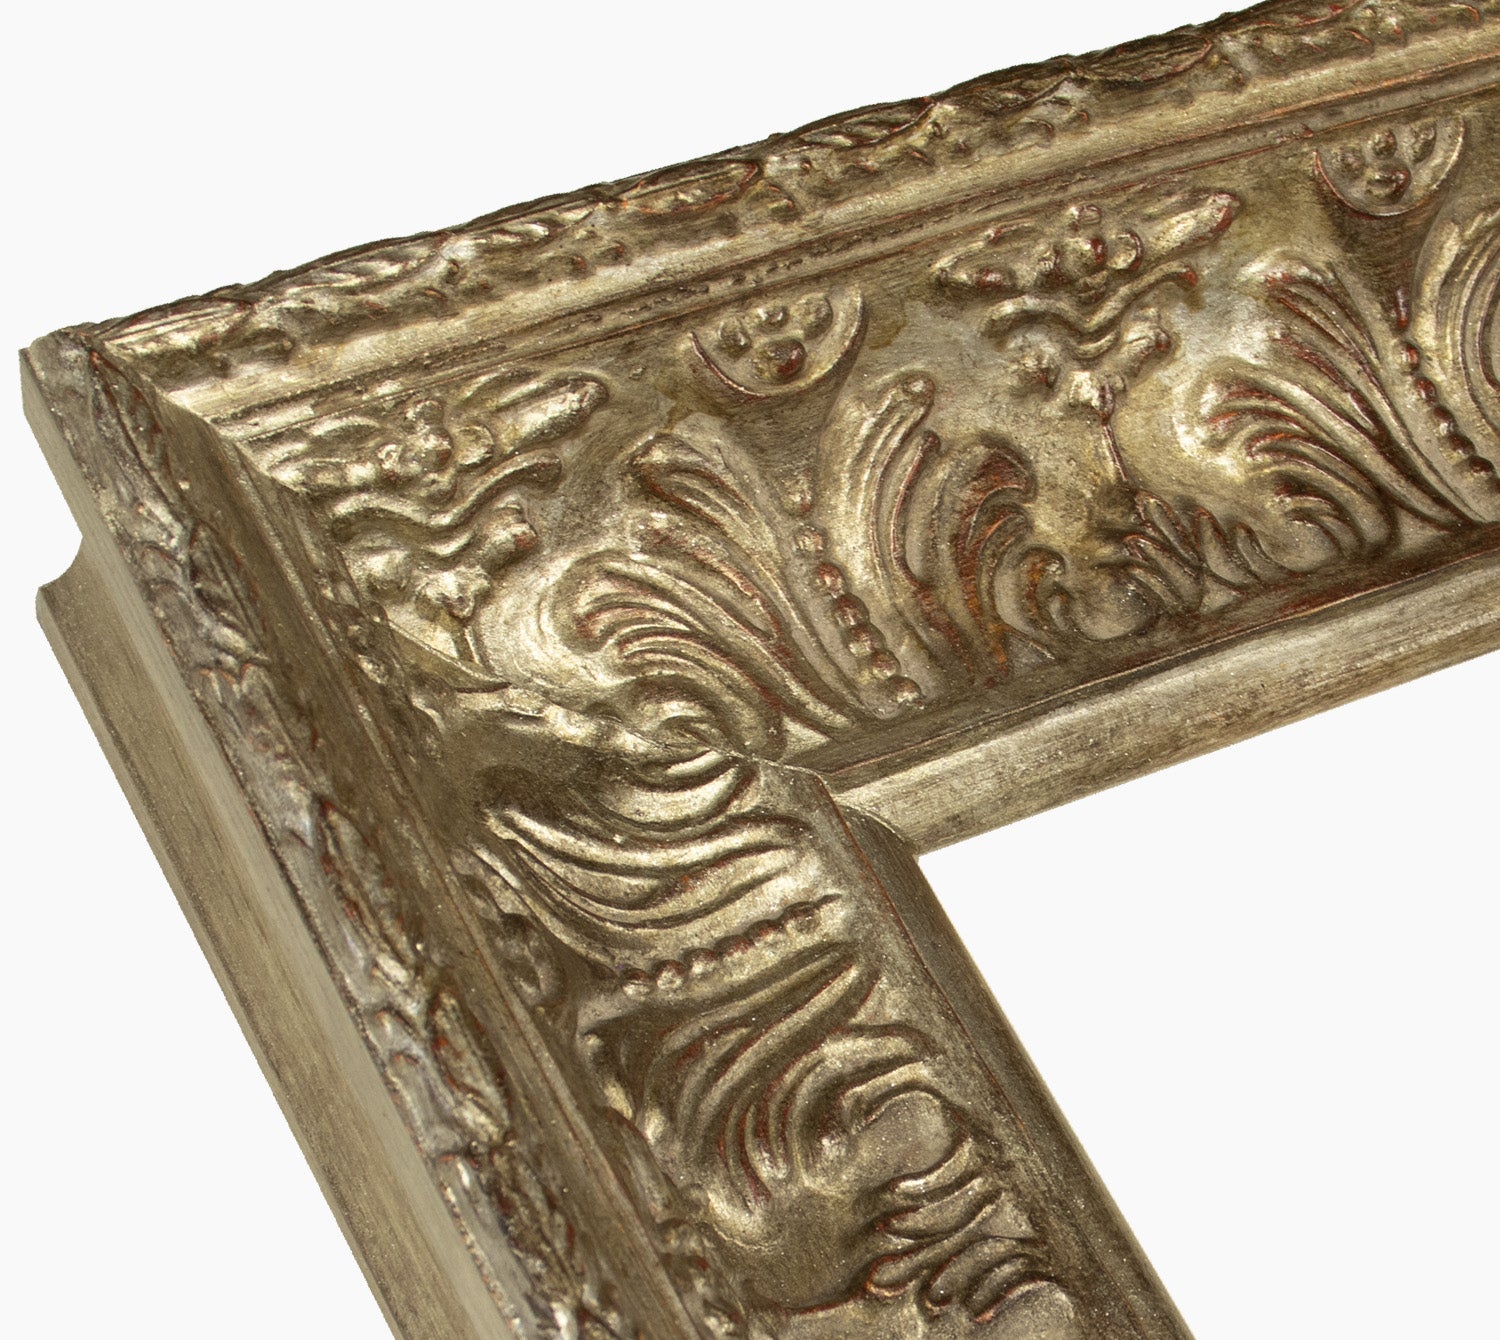 6300.231 cadre en bois à la feuille d'argent antique mesure de profil 90x73 mm Lombarda cornici S.n.c.